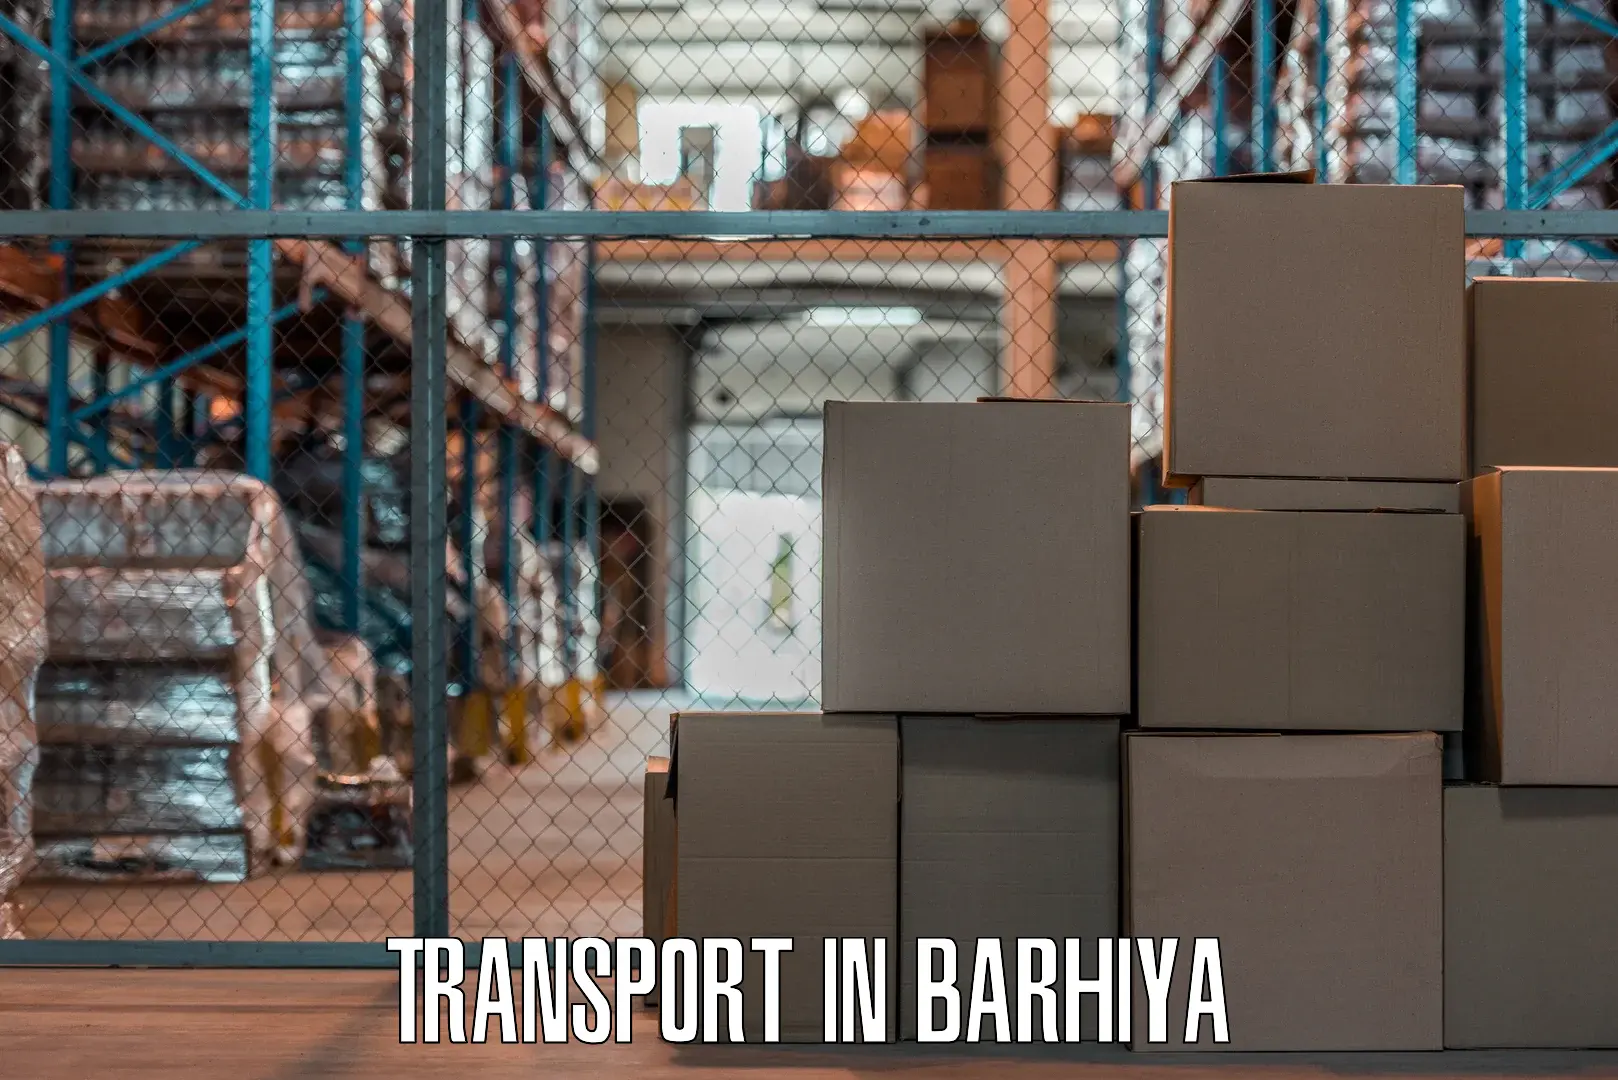 Bike shipping service in Barhiya